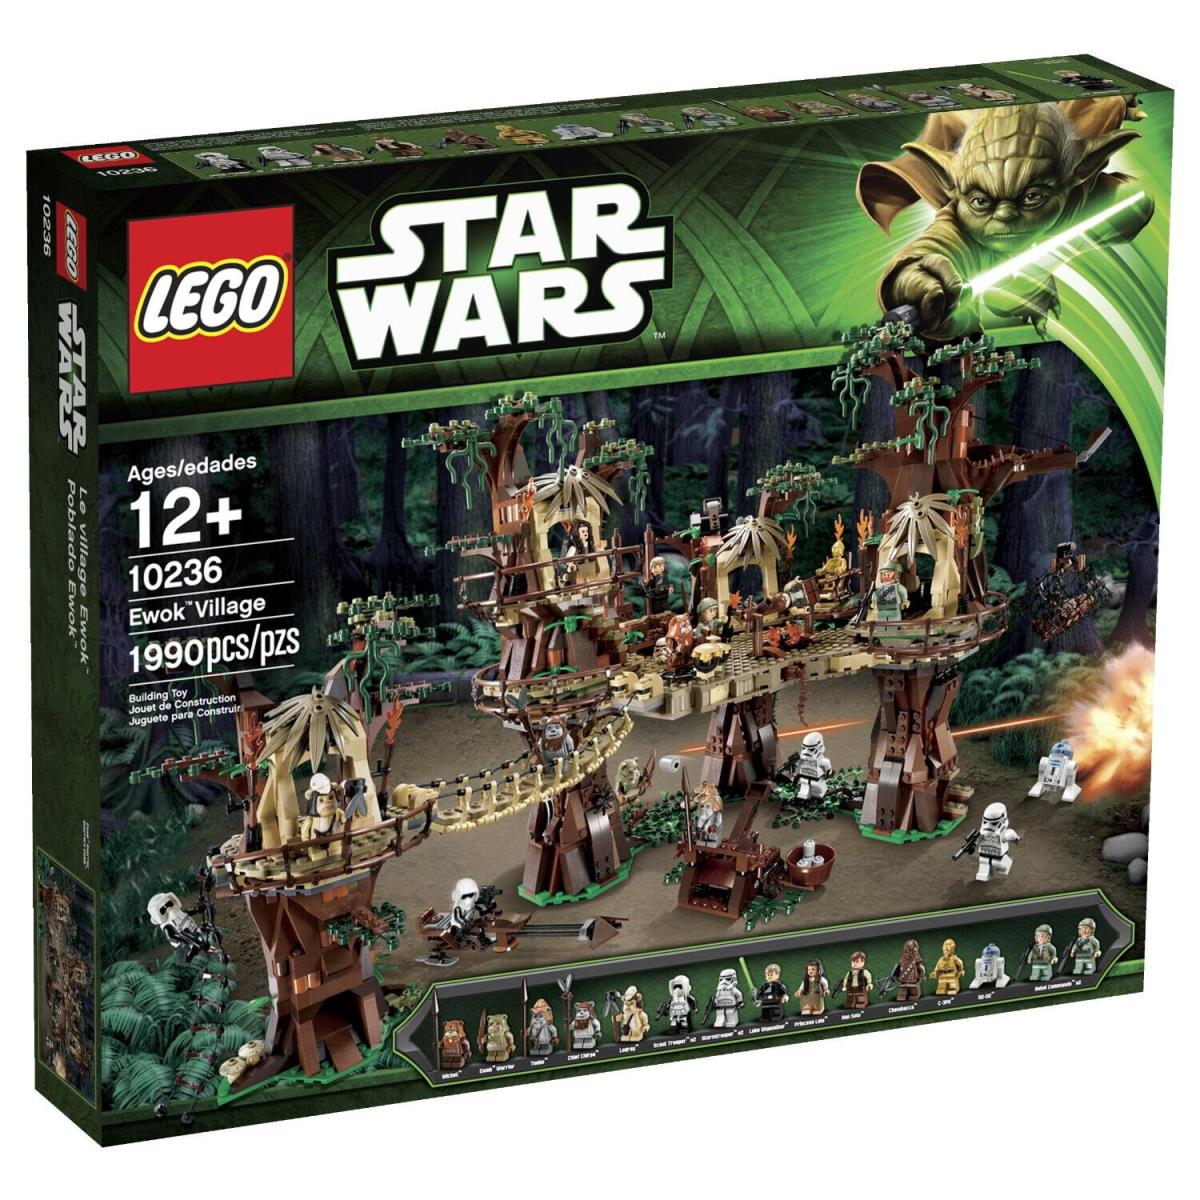 Lego Star Wars 10236 - Ewok Village - See Description